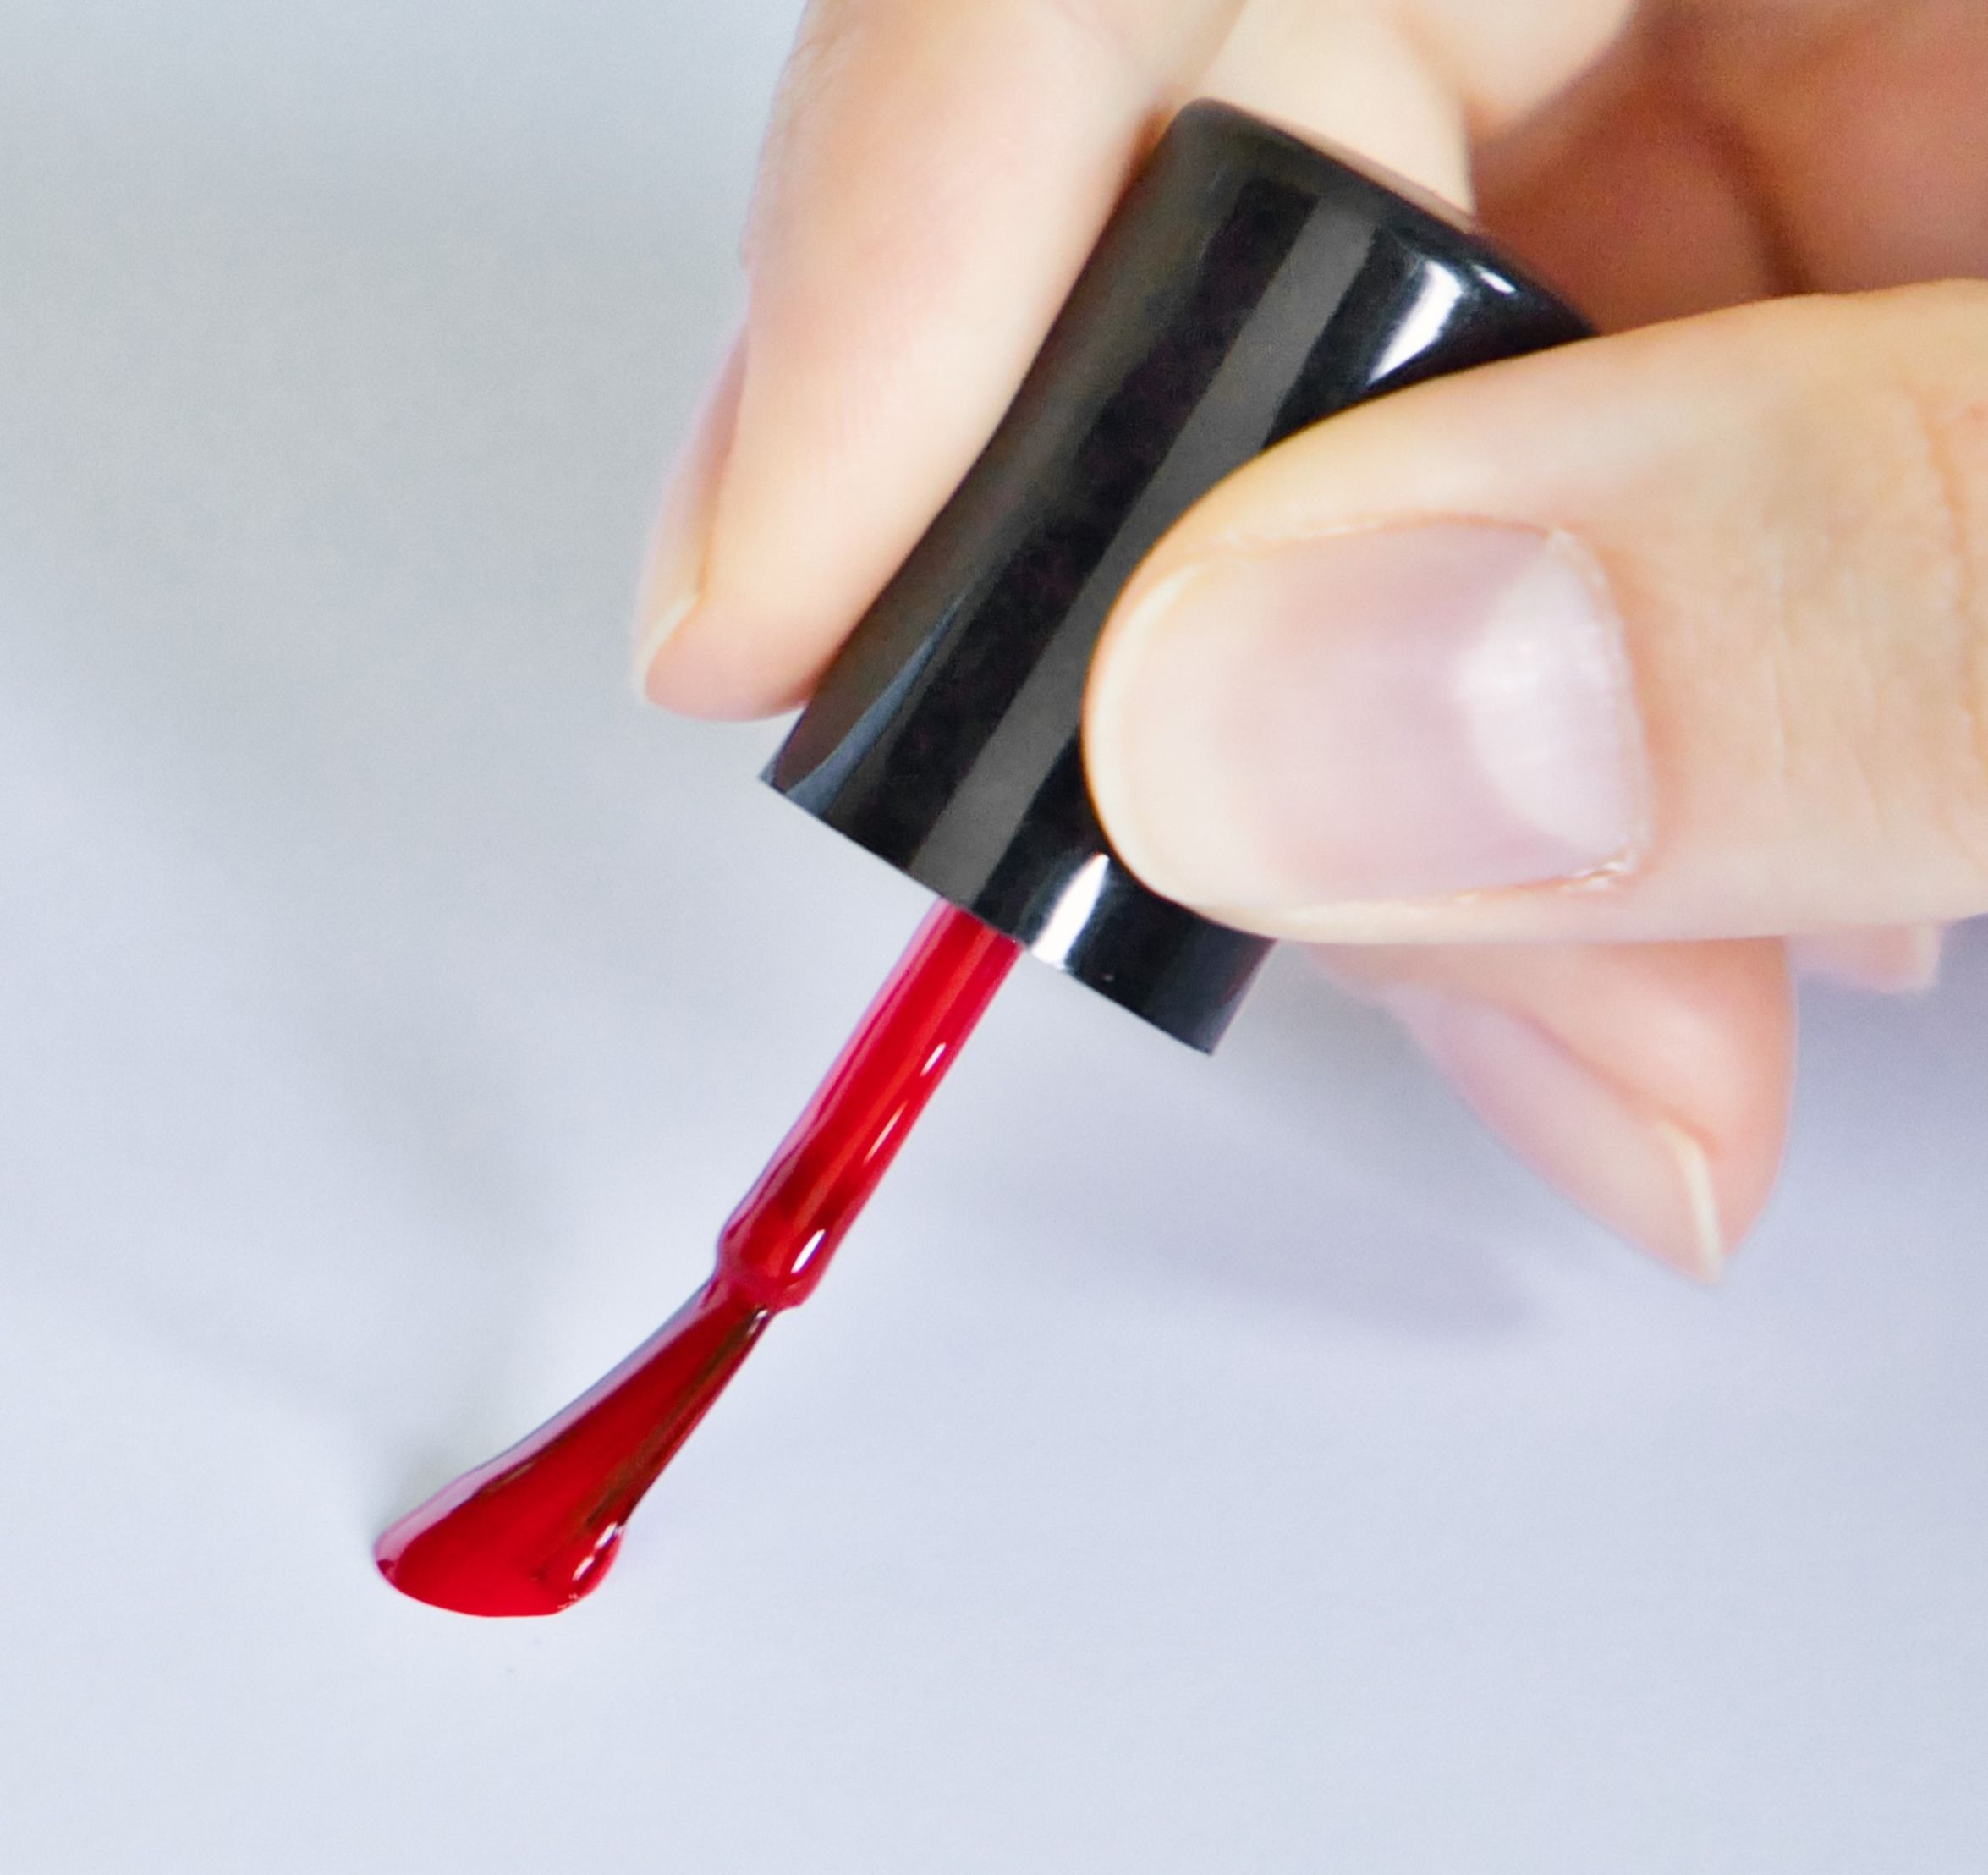 Das Bild zeigt wie ein roter Nagellack auf ein weißes Blatt aufgetragen wird.